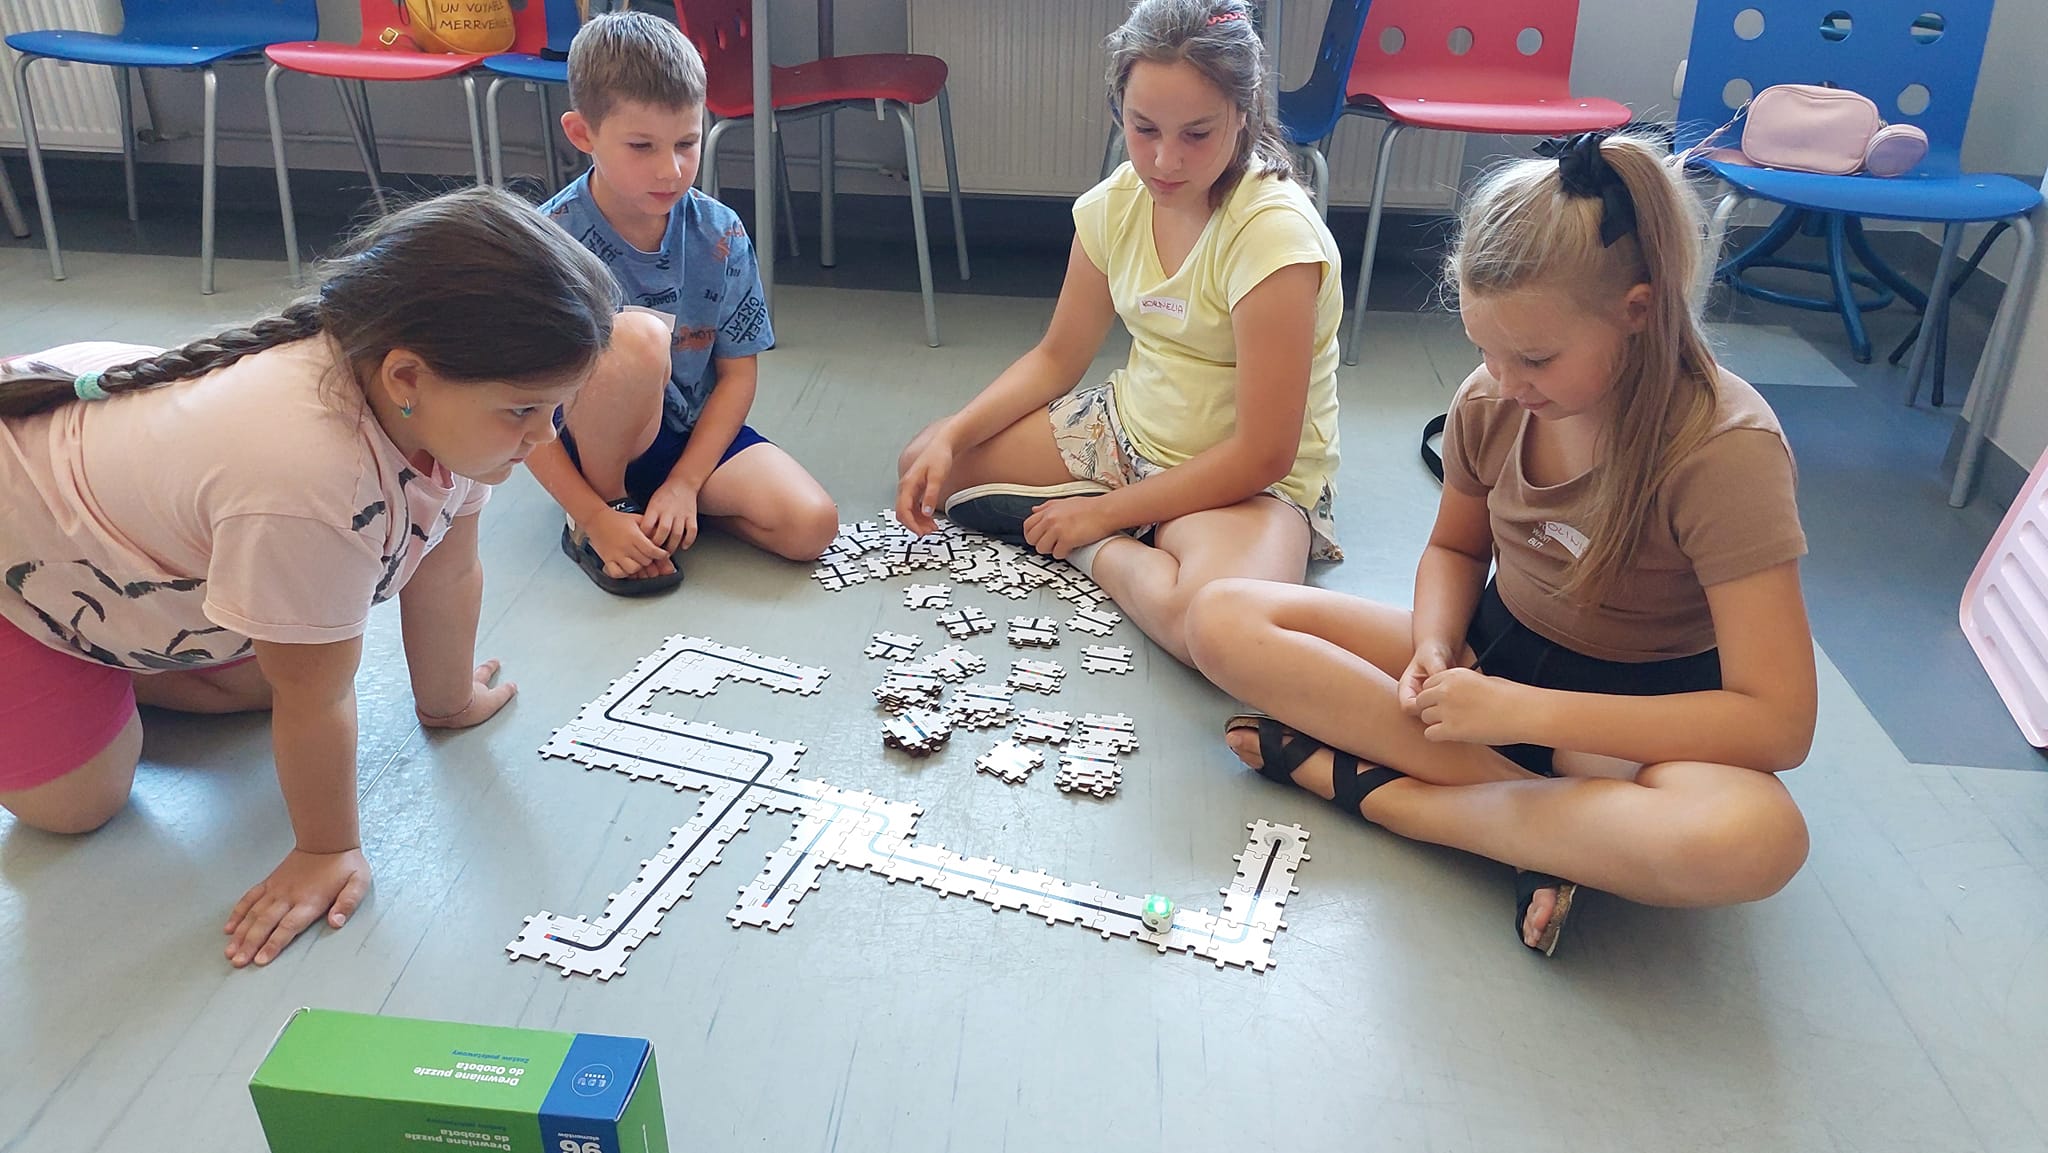 Biblioteka, czytelnia dla dorosłych. Dzieci siedzi na podłodze w grupach i rozbudowują tor w kształcie puzzli, po którym przemieszcza się mały robot.